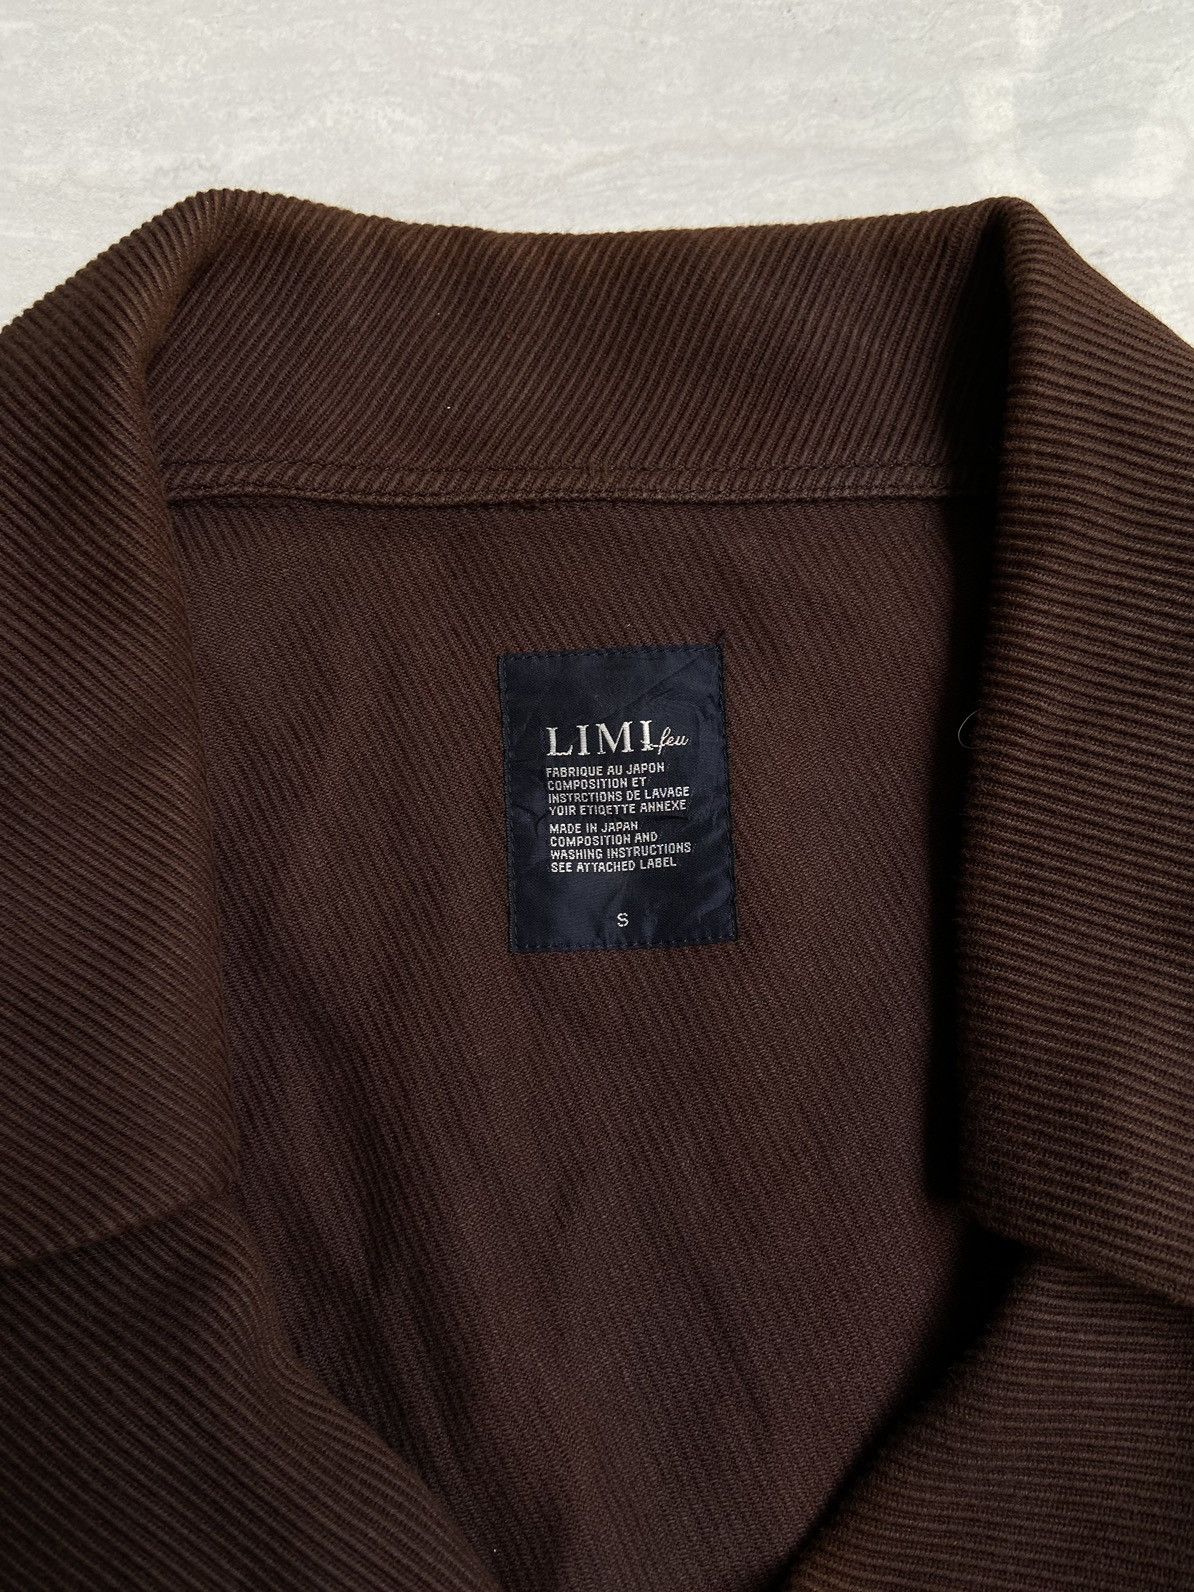 Yohji Yamamoto LIMI FEU Brown Blazer Vest Size US S / EU 44-46 / 1 - 11 Thumbnail